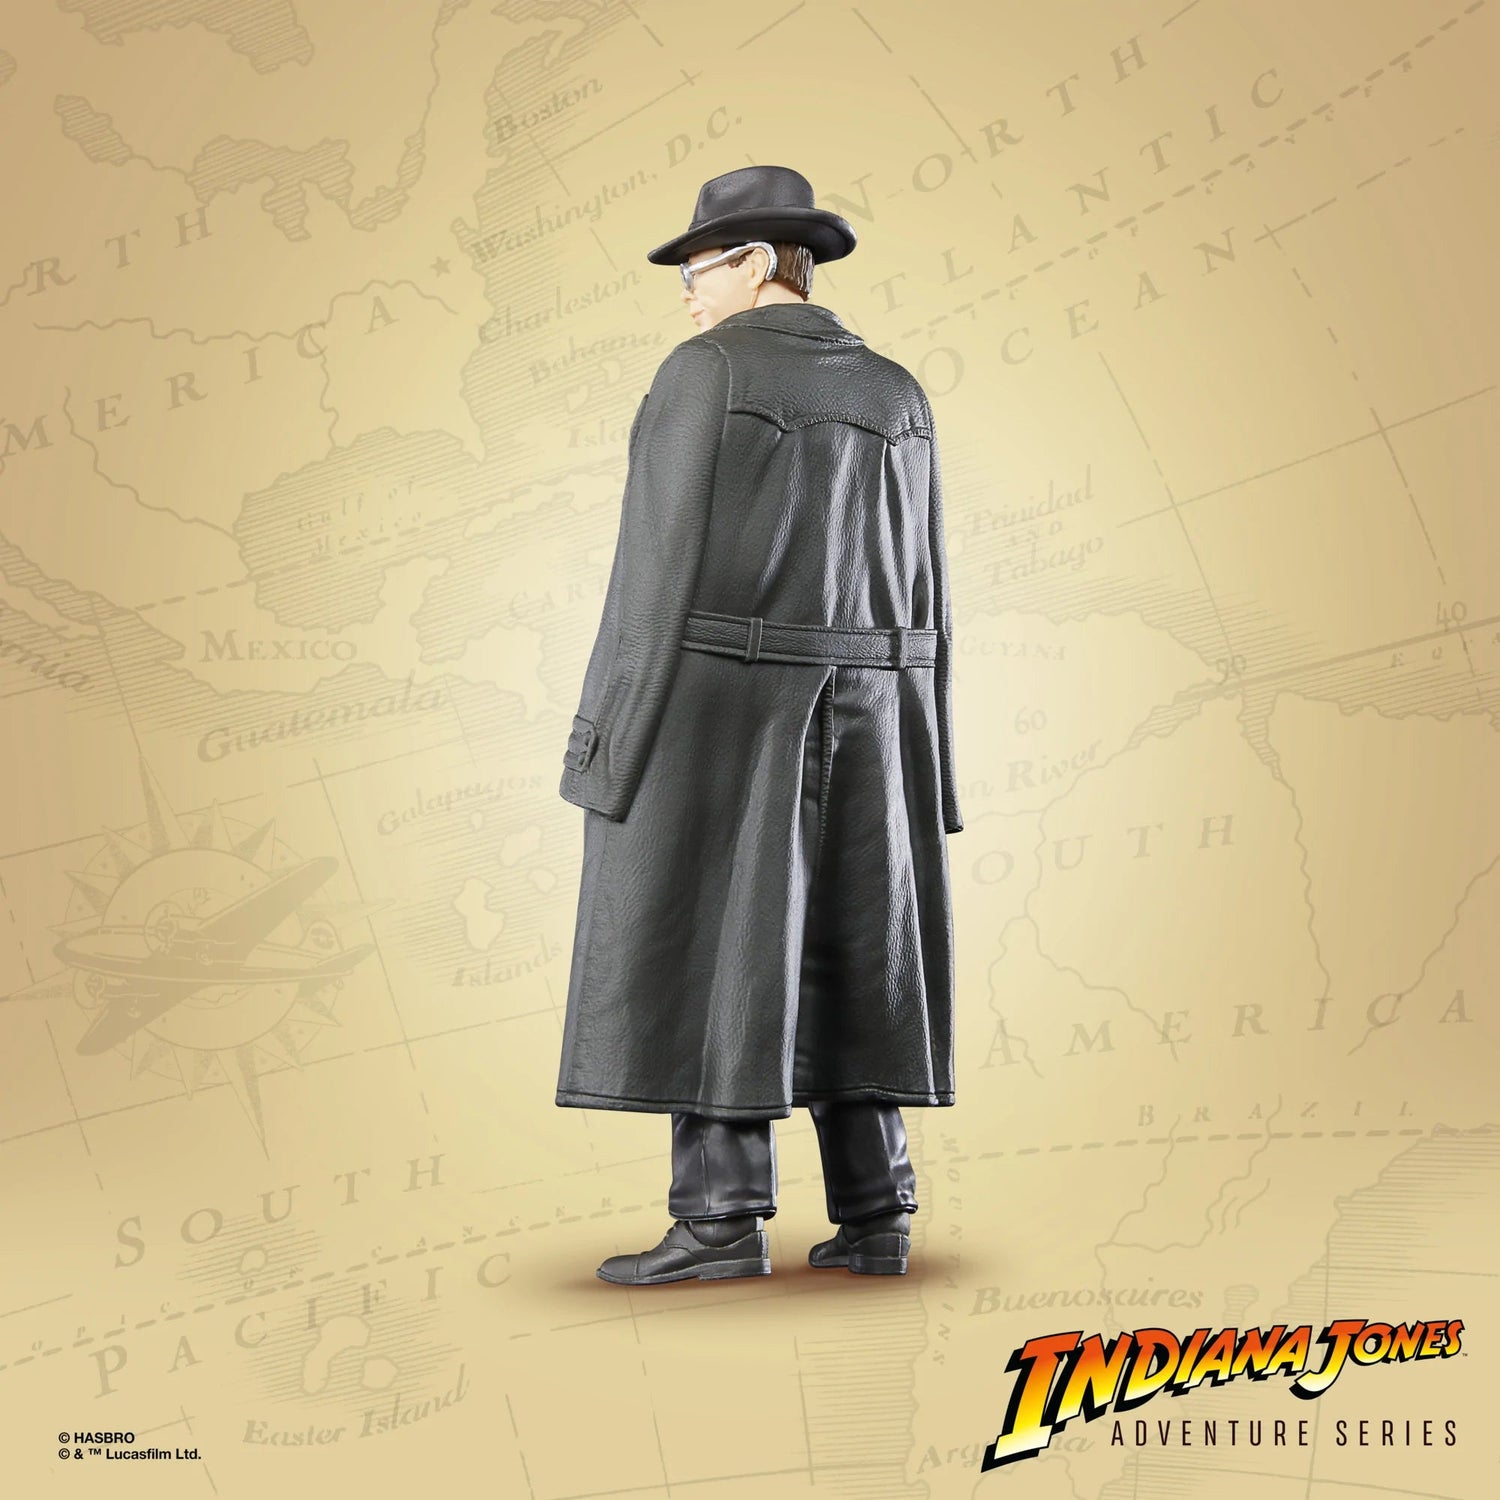 Indiana Jones Adventure Series Raiders of the Lost Ark Arnold Toht Hasbro